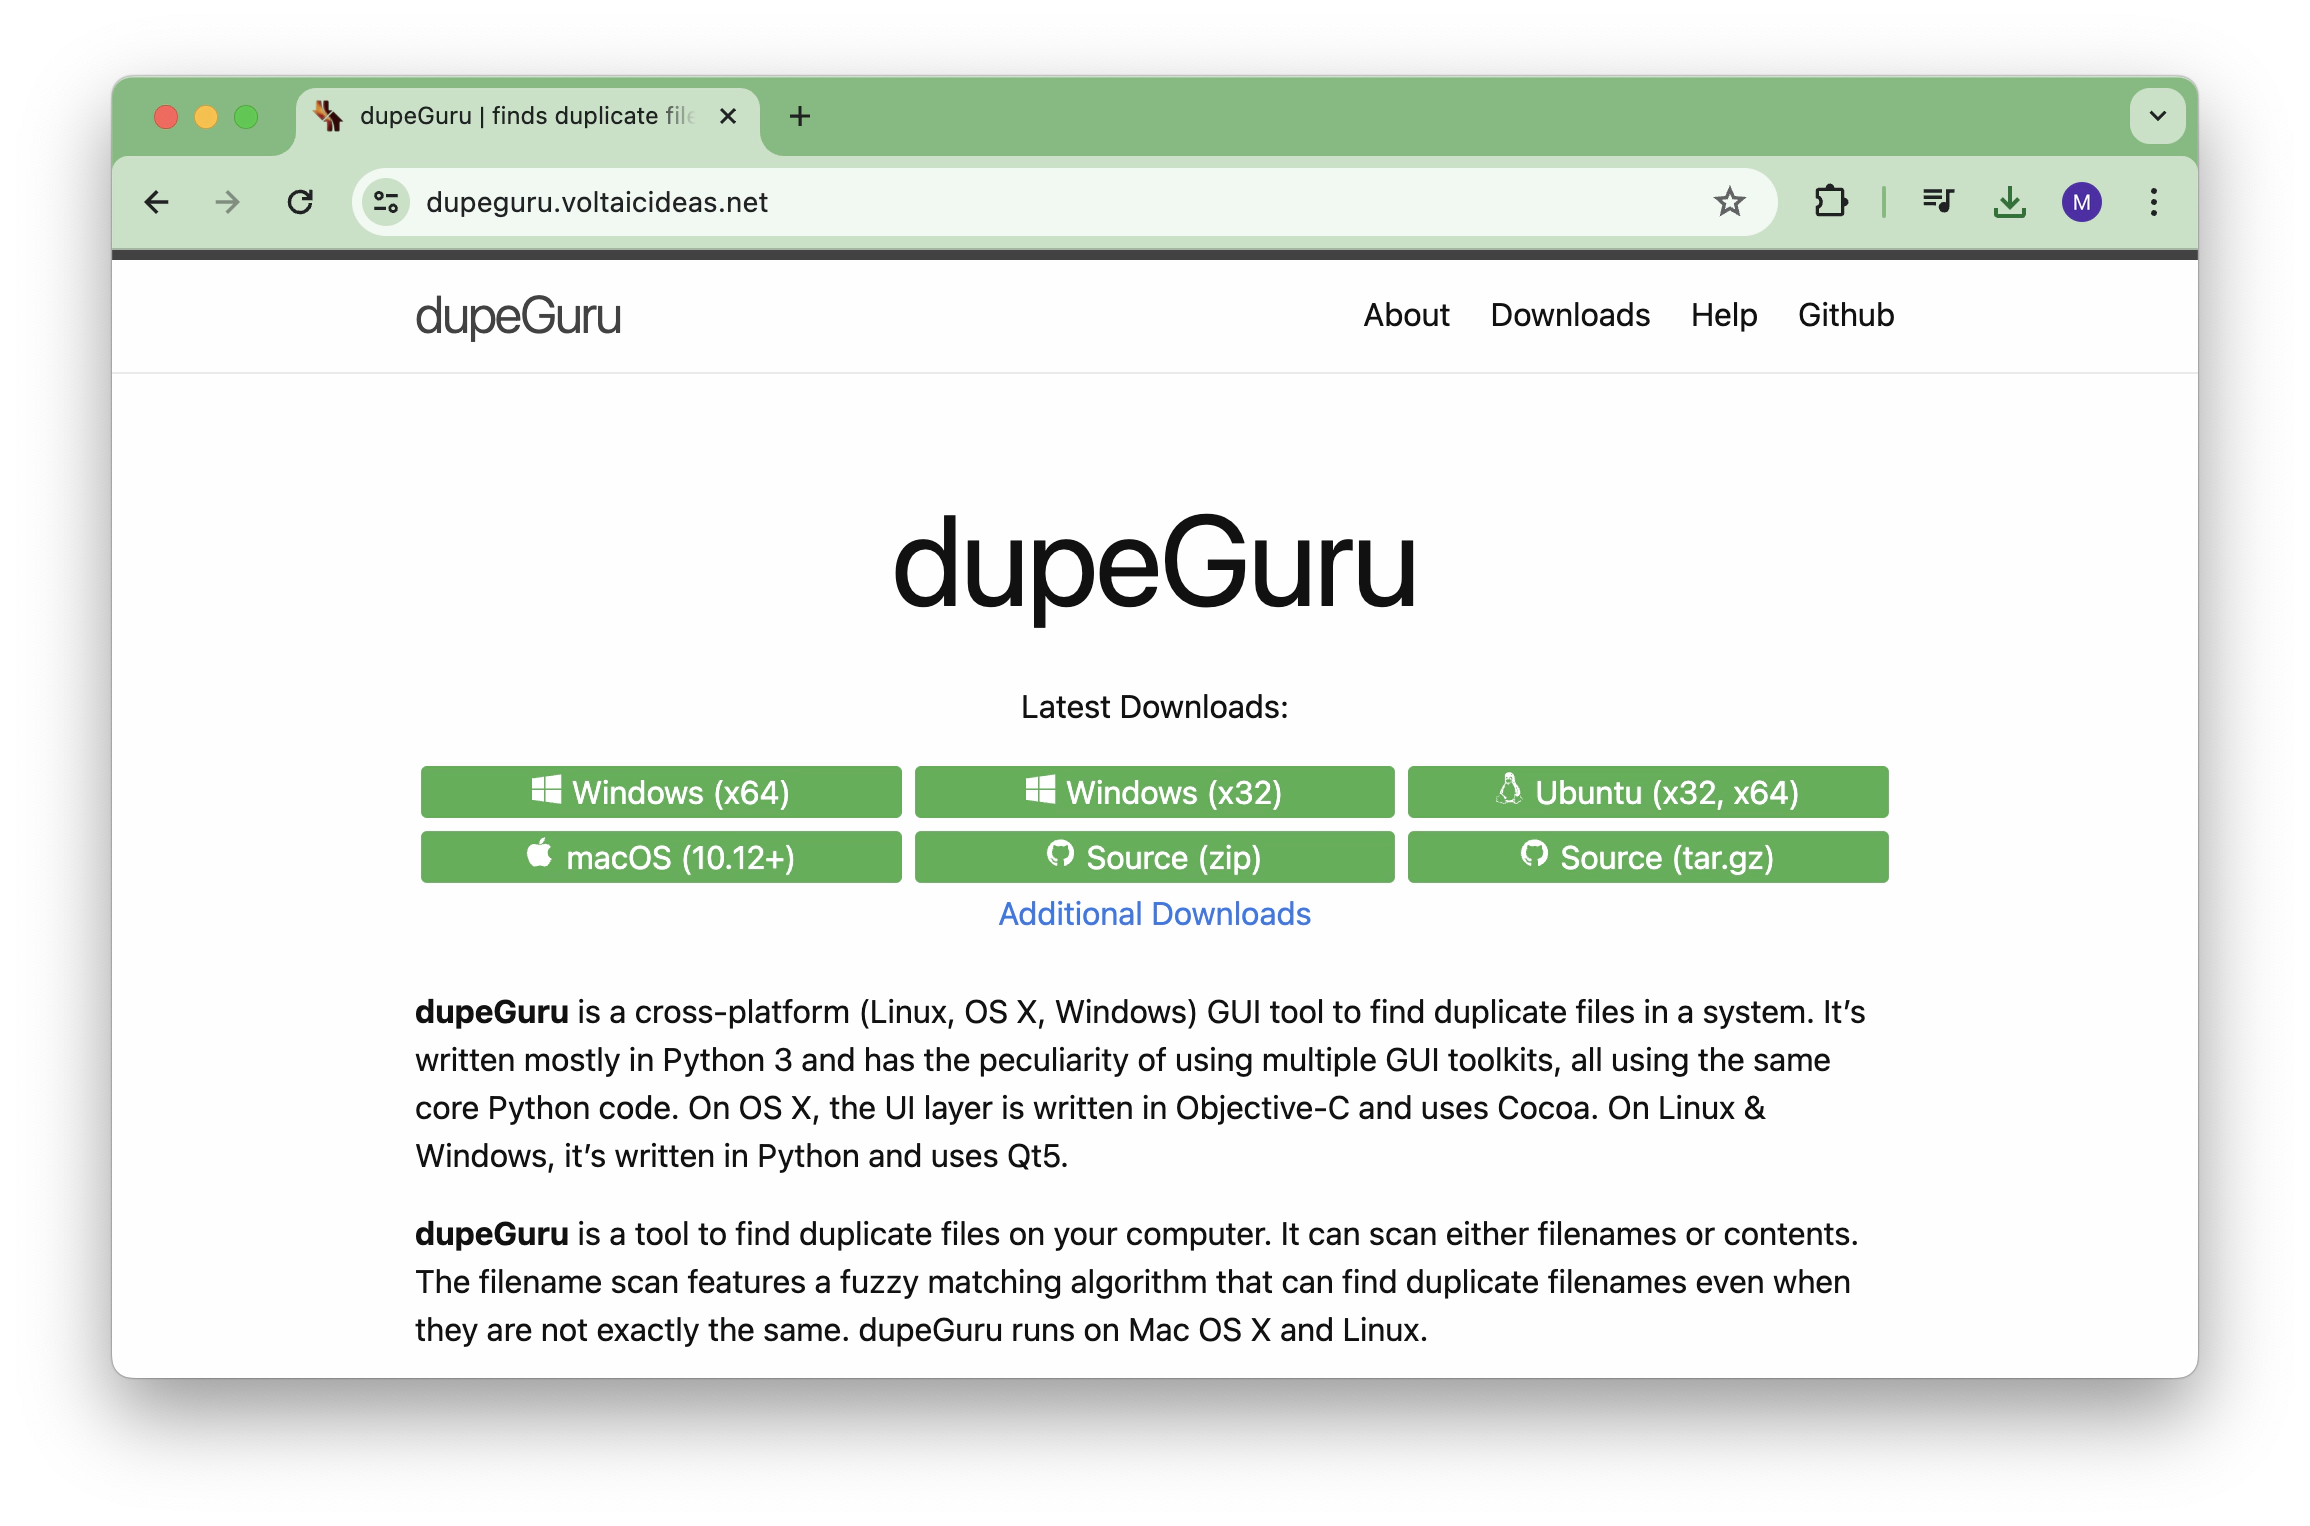 dupeGuru website